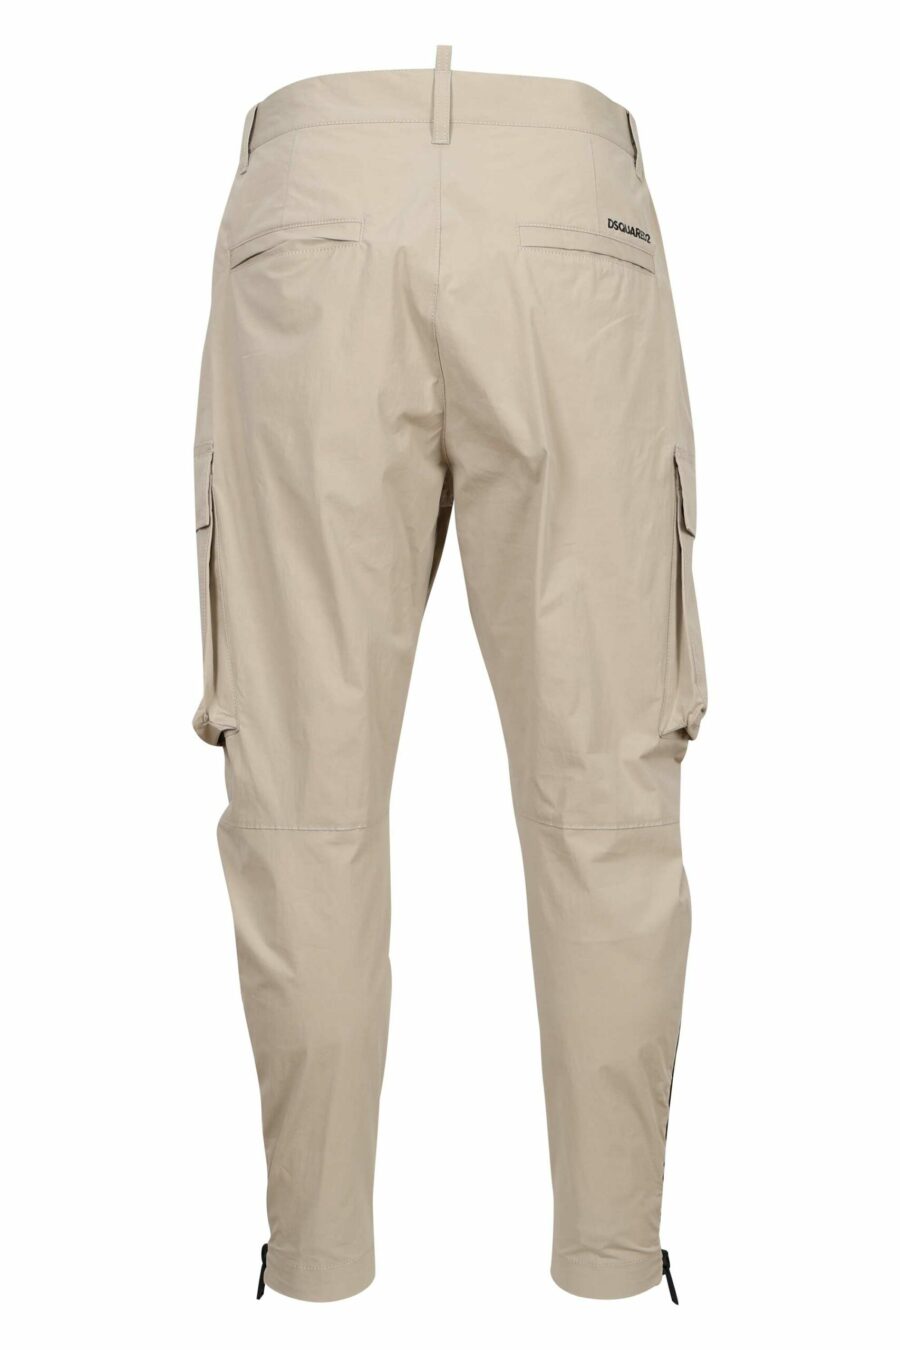 Pantalon cargo beige avec zips latéraux "D2 sexy cargo" - 8054148388041 2 échelles